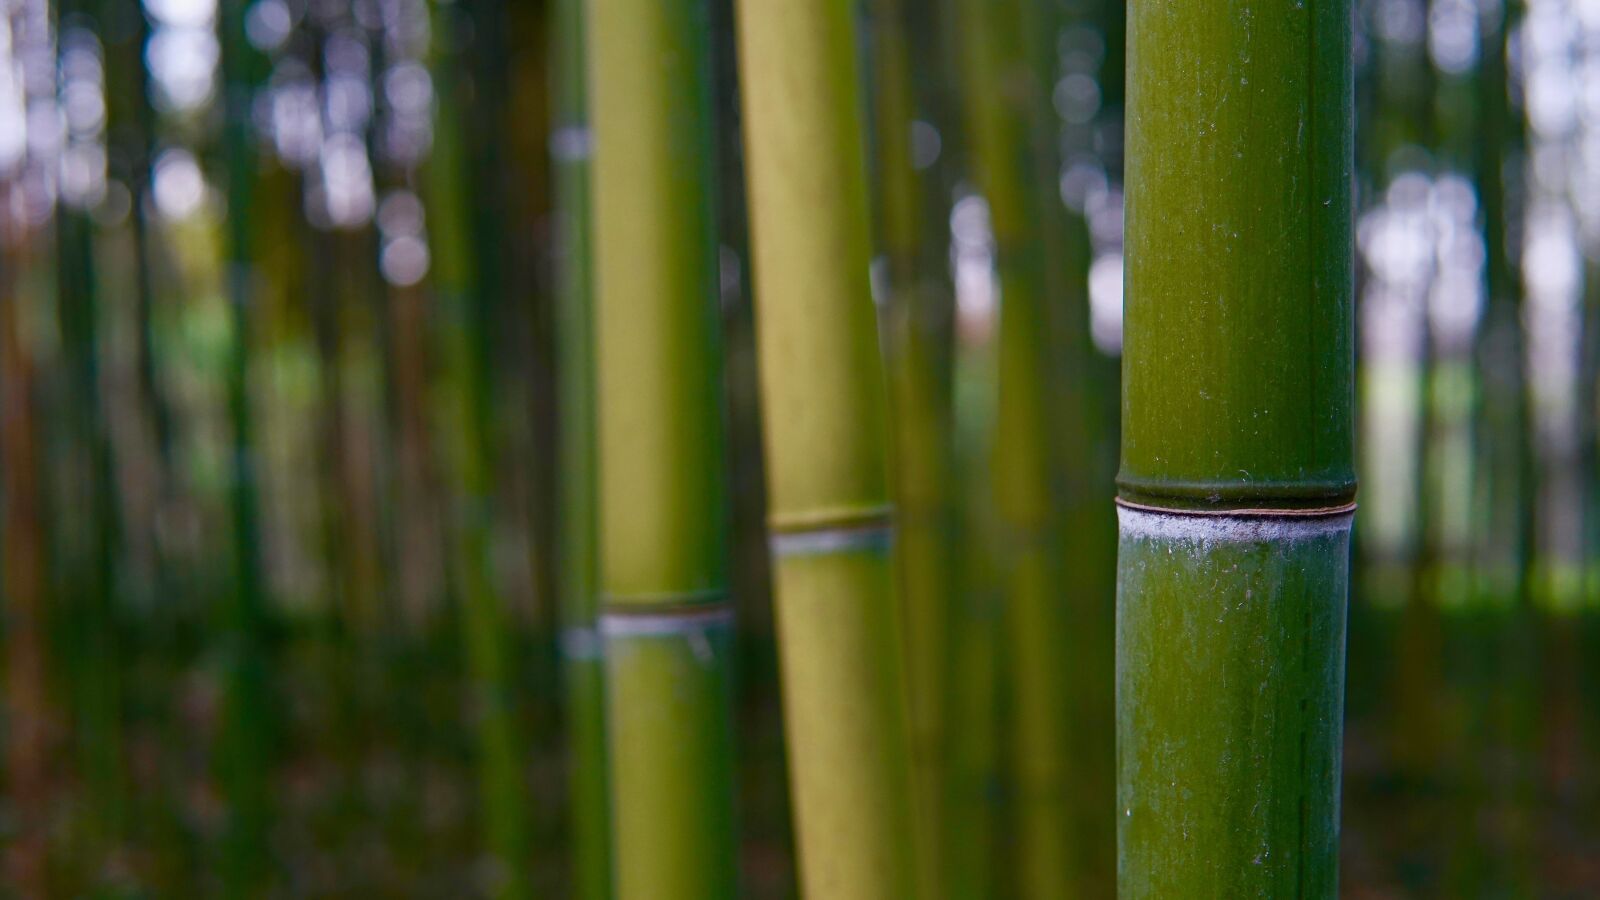 Sony a6300 sample photo. Bamboo, plant, tree photography